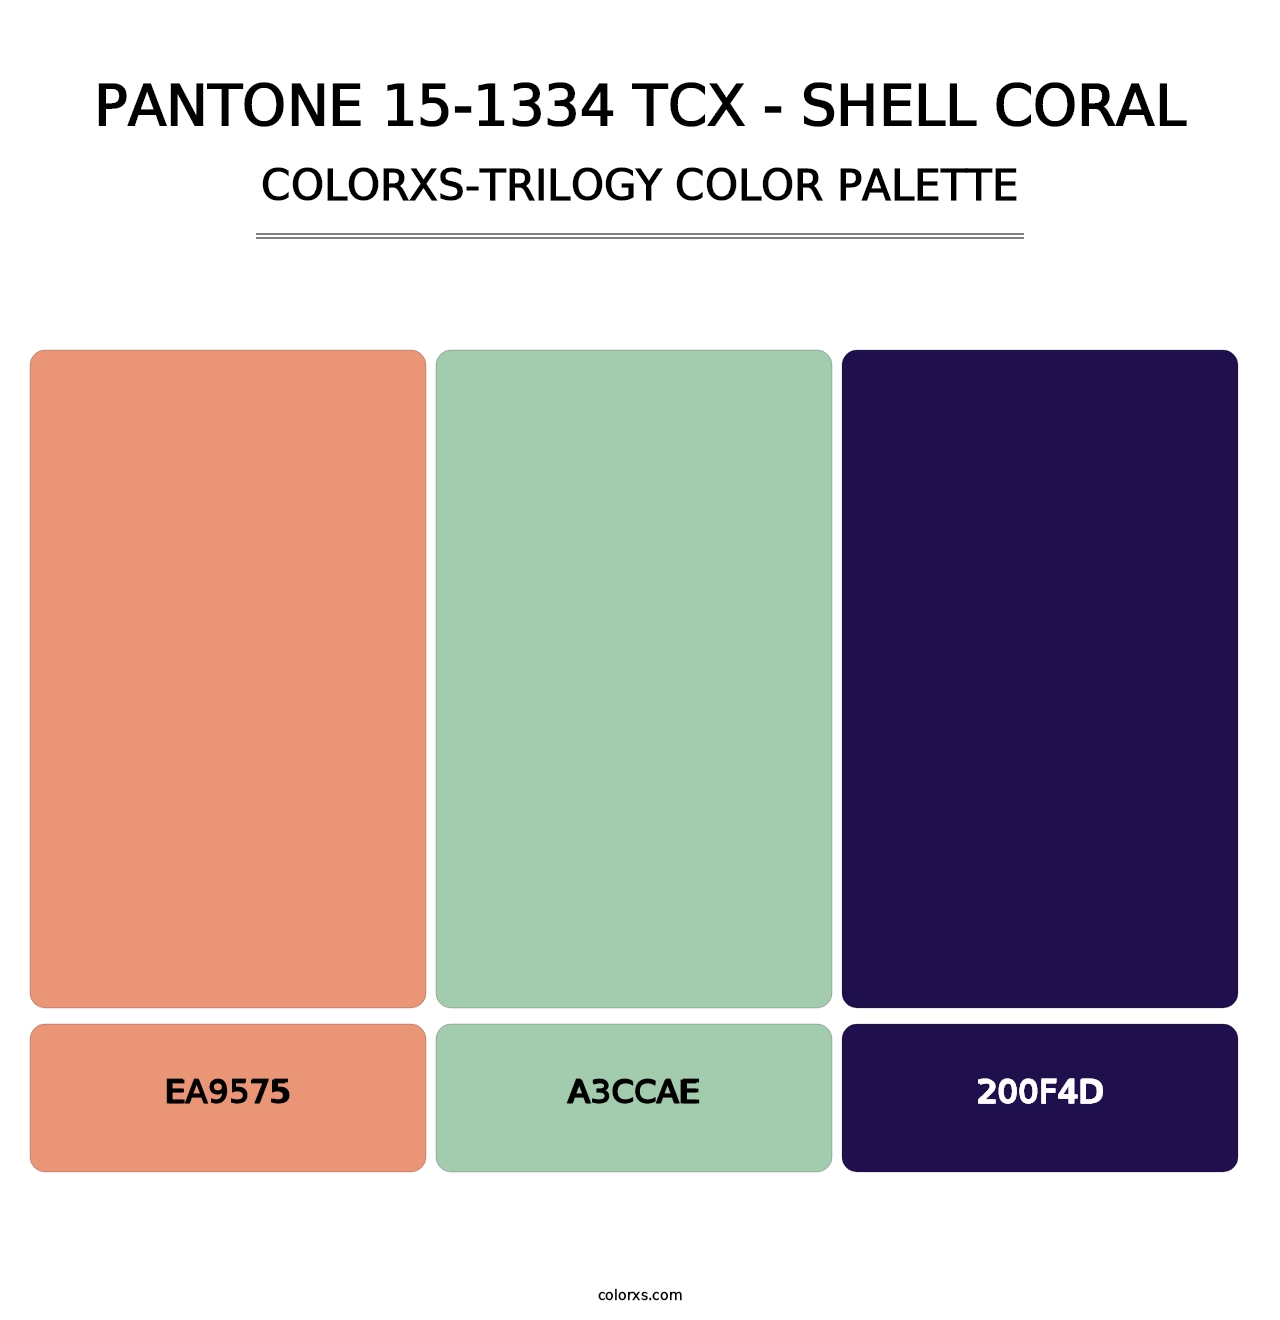 PANTONE 15-1334 TCX - Shell Coral - Colorxs Trilogy Palette